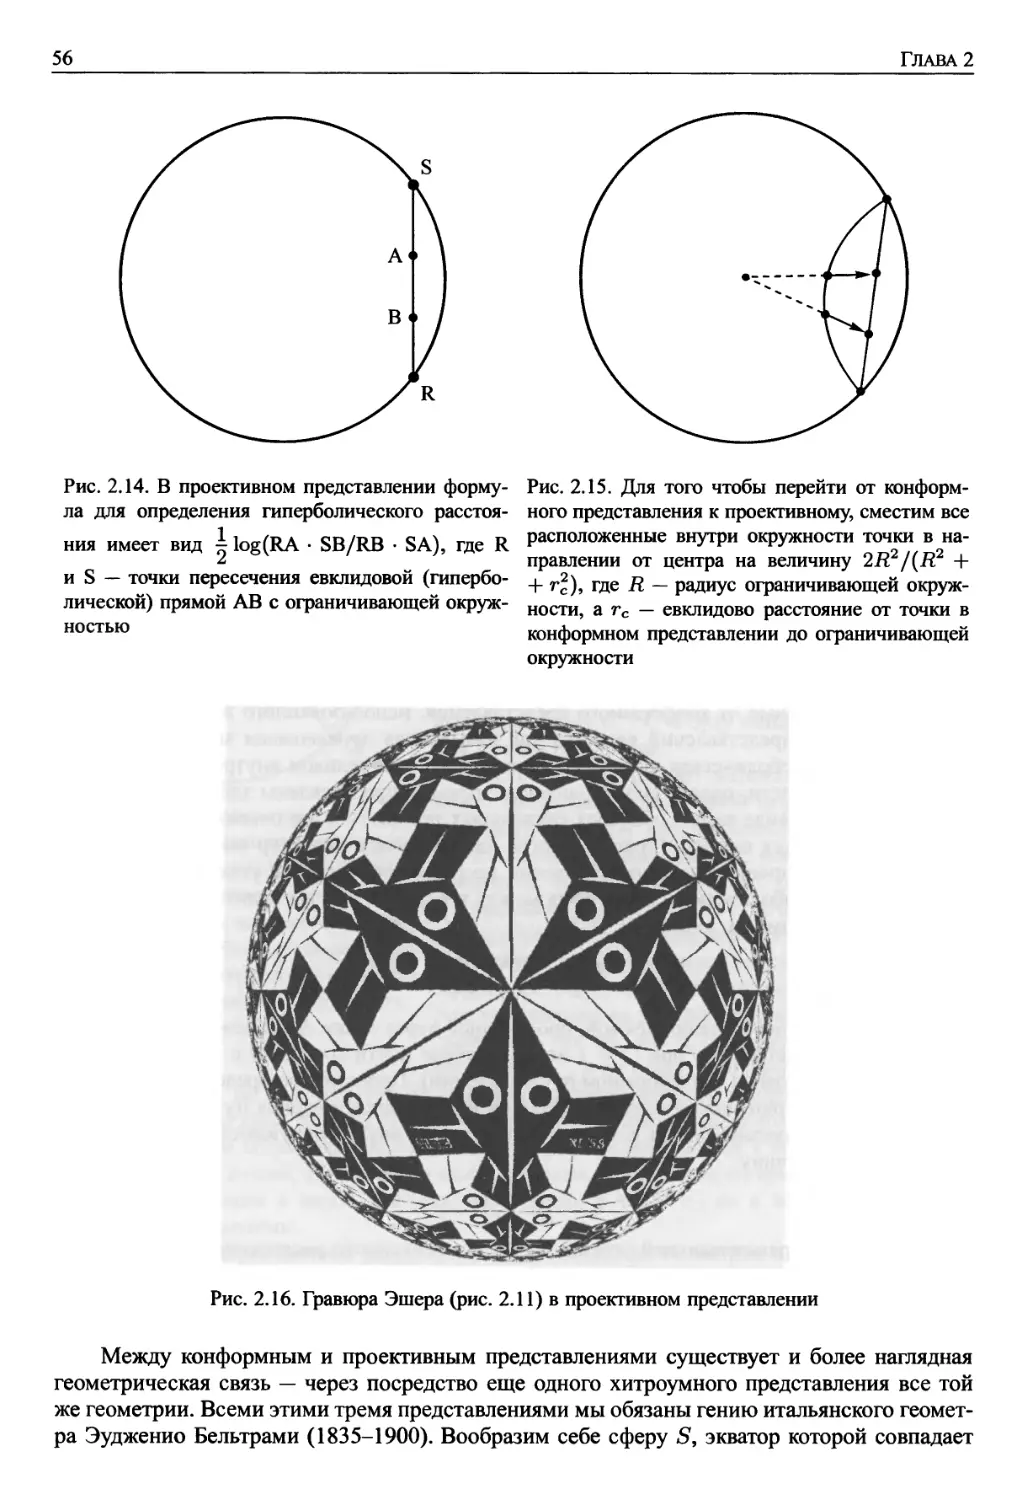 2.5. Другие представления гиперболической геометрии